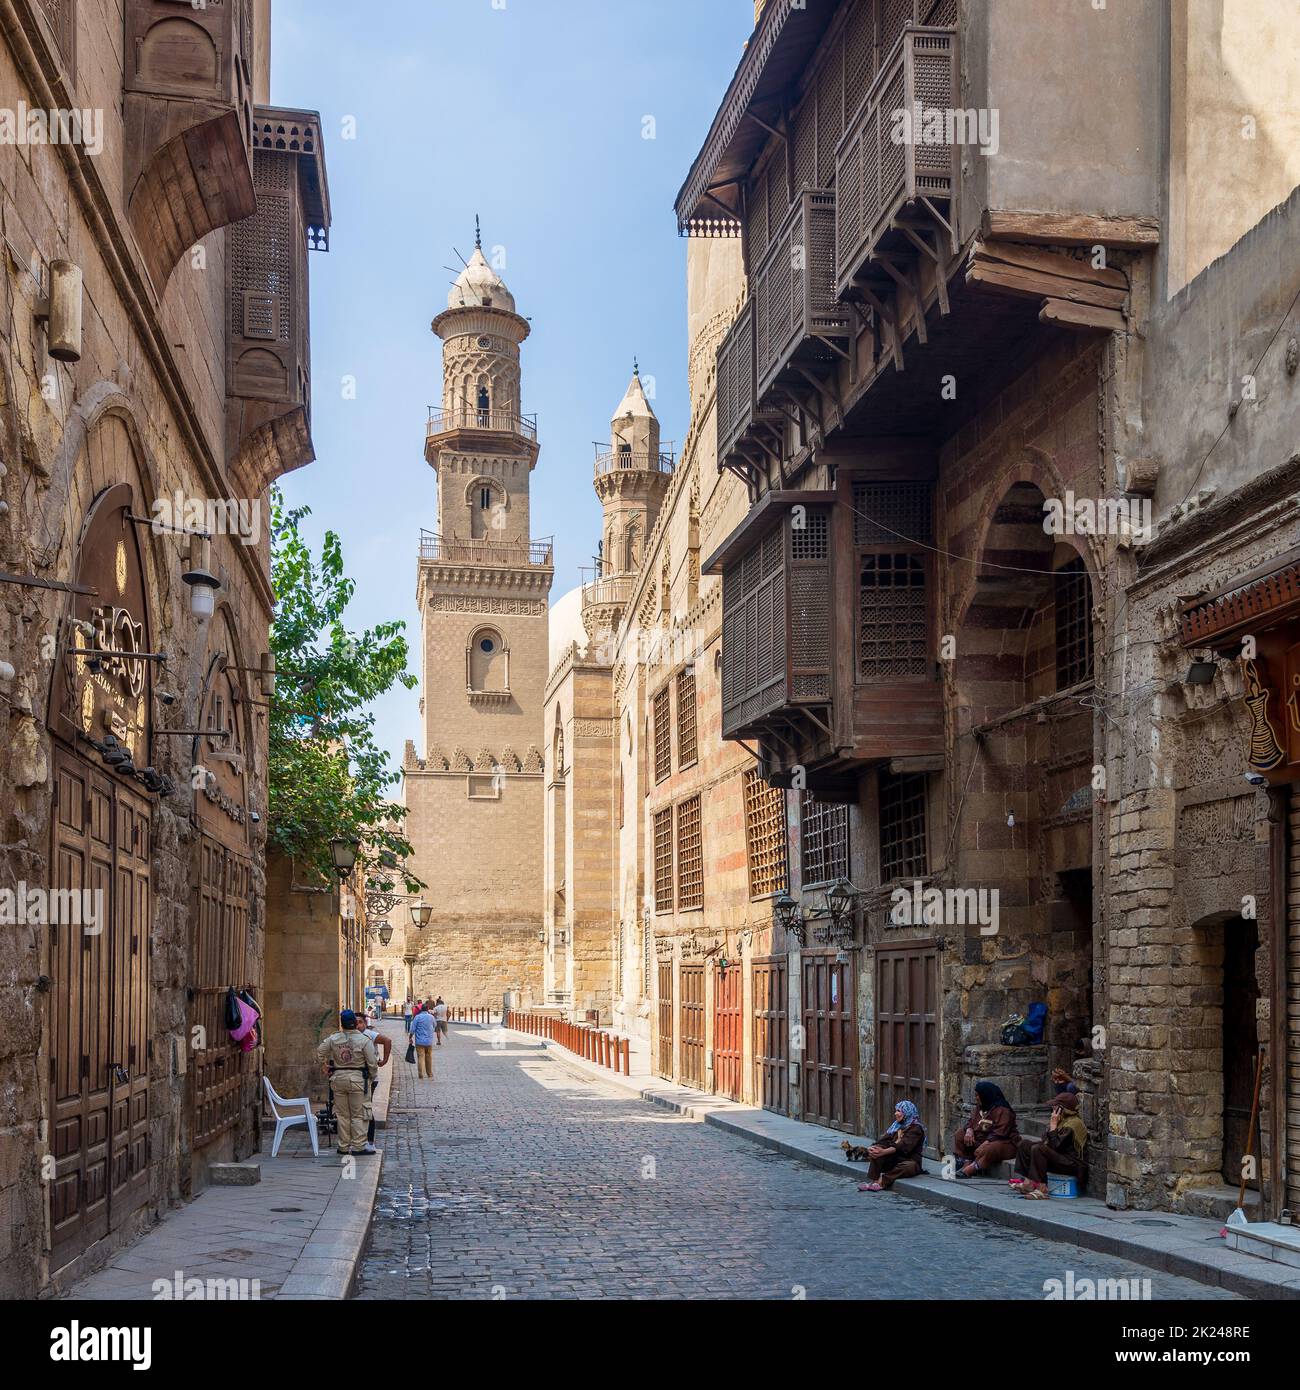 Kairo, Ägypten - 26 2020. Juni: Moez Street mit Arbeitern, wenigen lokalen Besuchern und Minarett des Qalawun-Komplexes historischen Gebäudes, während Covid-19 Lockdown pe Stockfoto